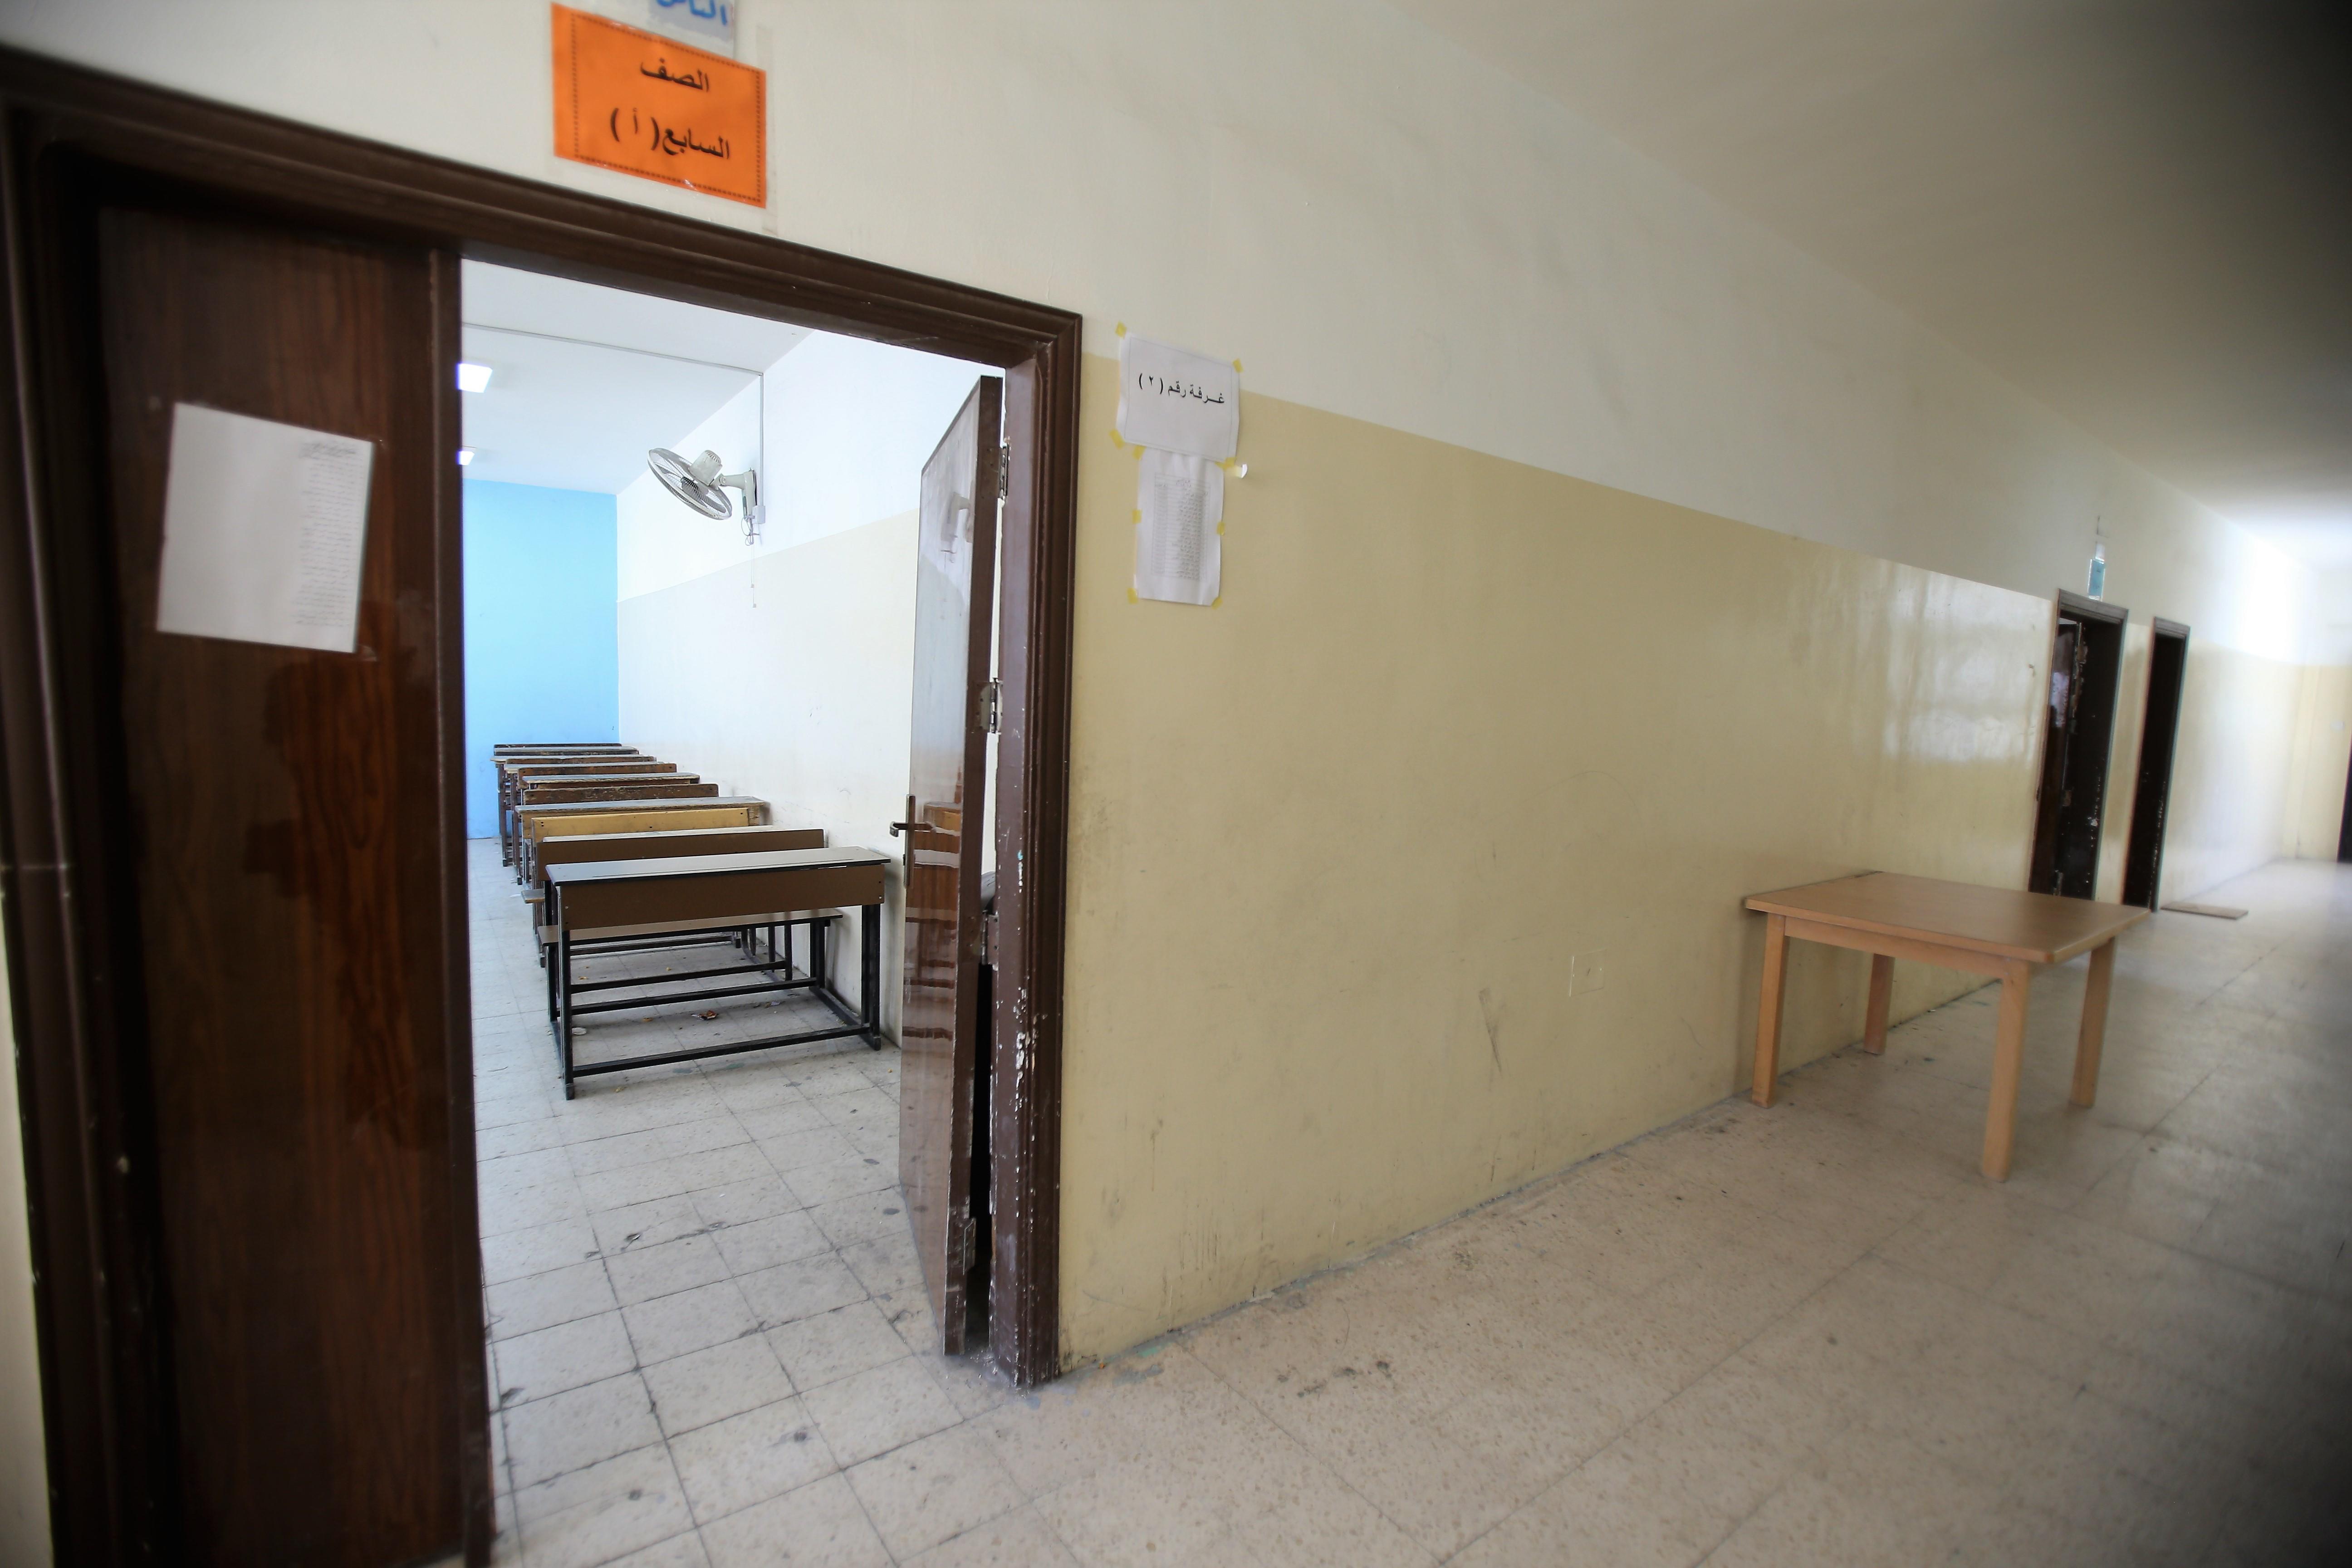 غرفة صفية في مدرسة حكومية تخلو من الطلاب، بسبب إضراب المعلمين. (صلاح ملكاوي/ المملكة)